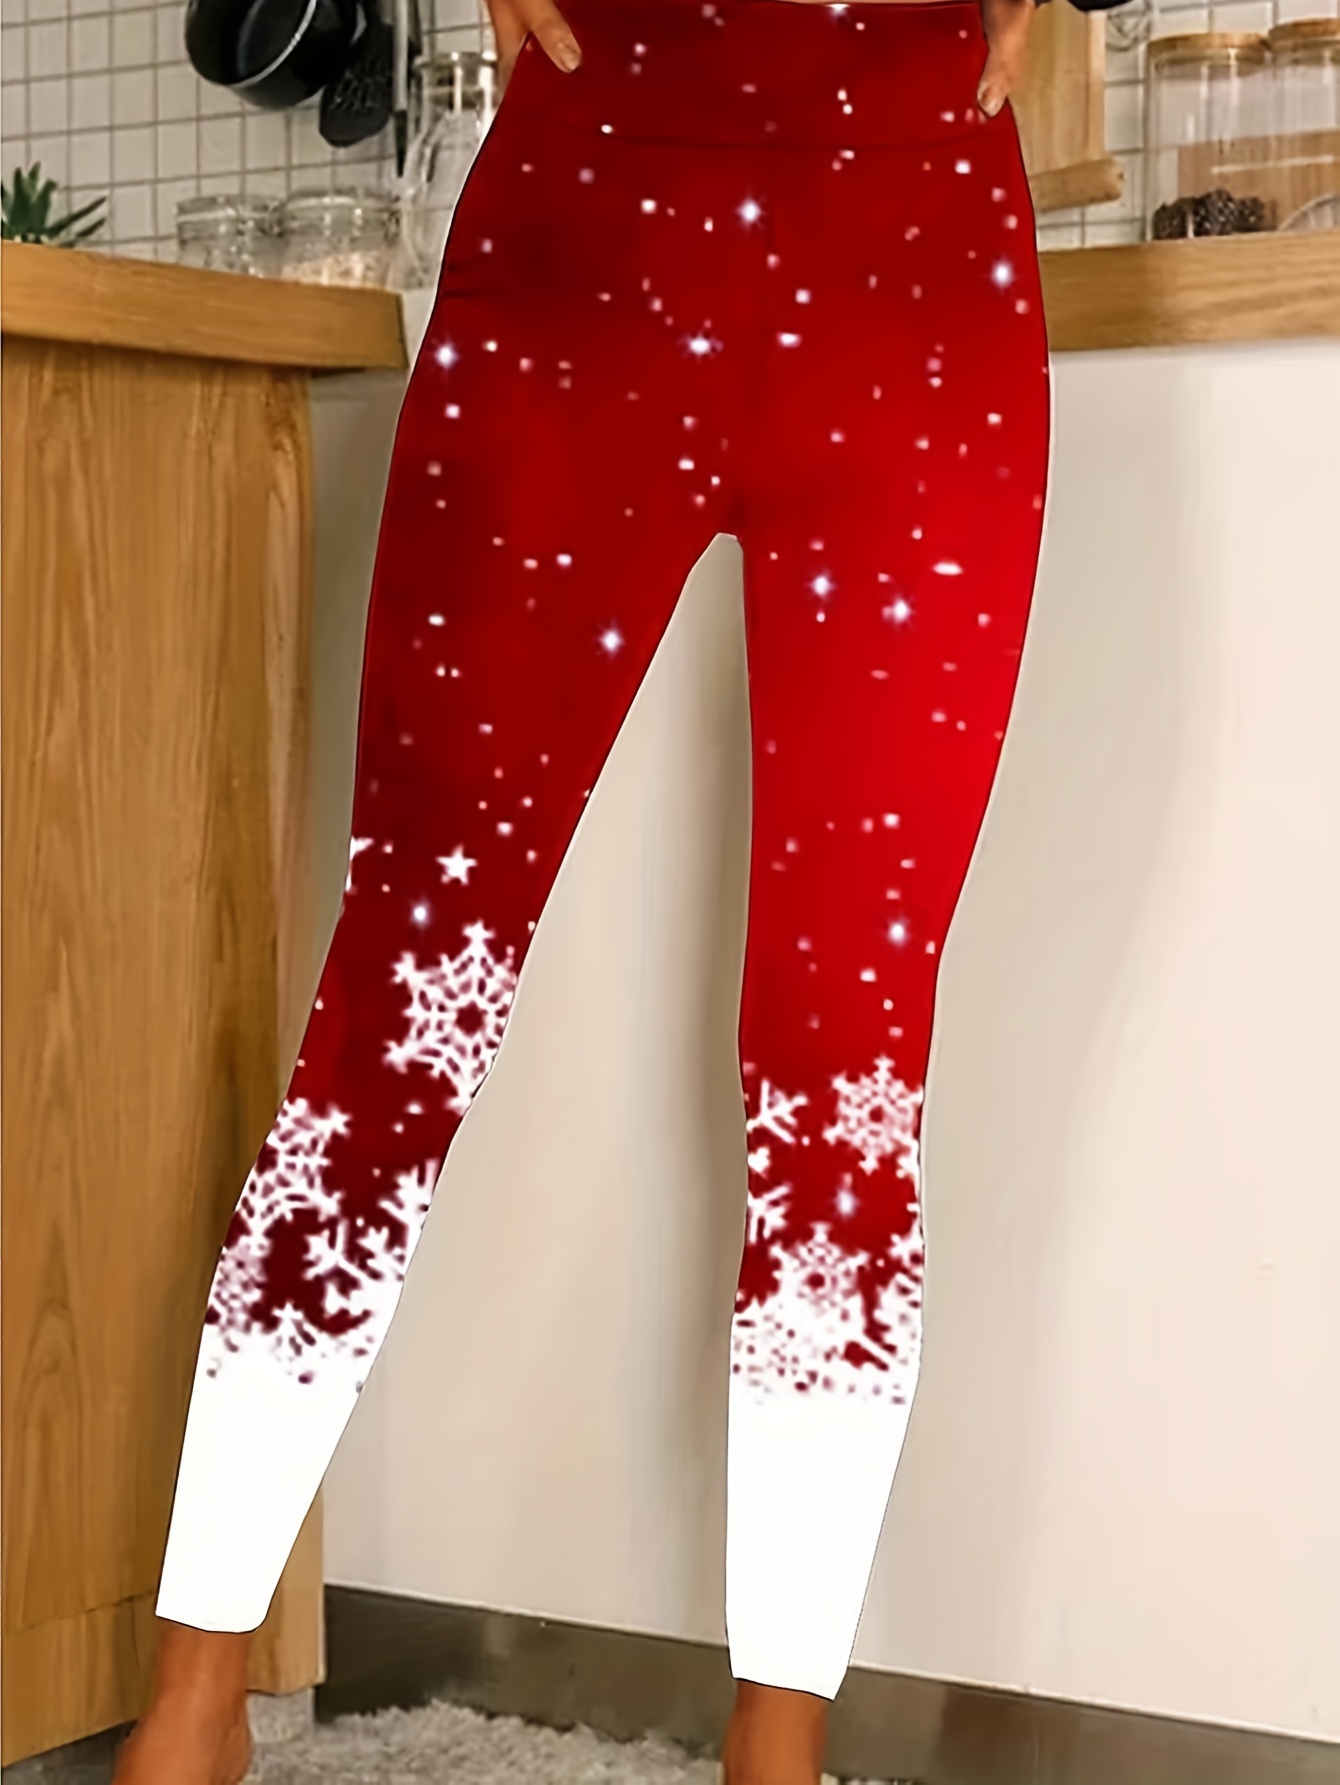 Jessica Christmas Leggings In Santa&Globes